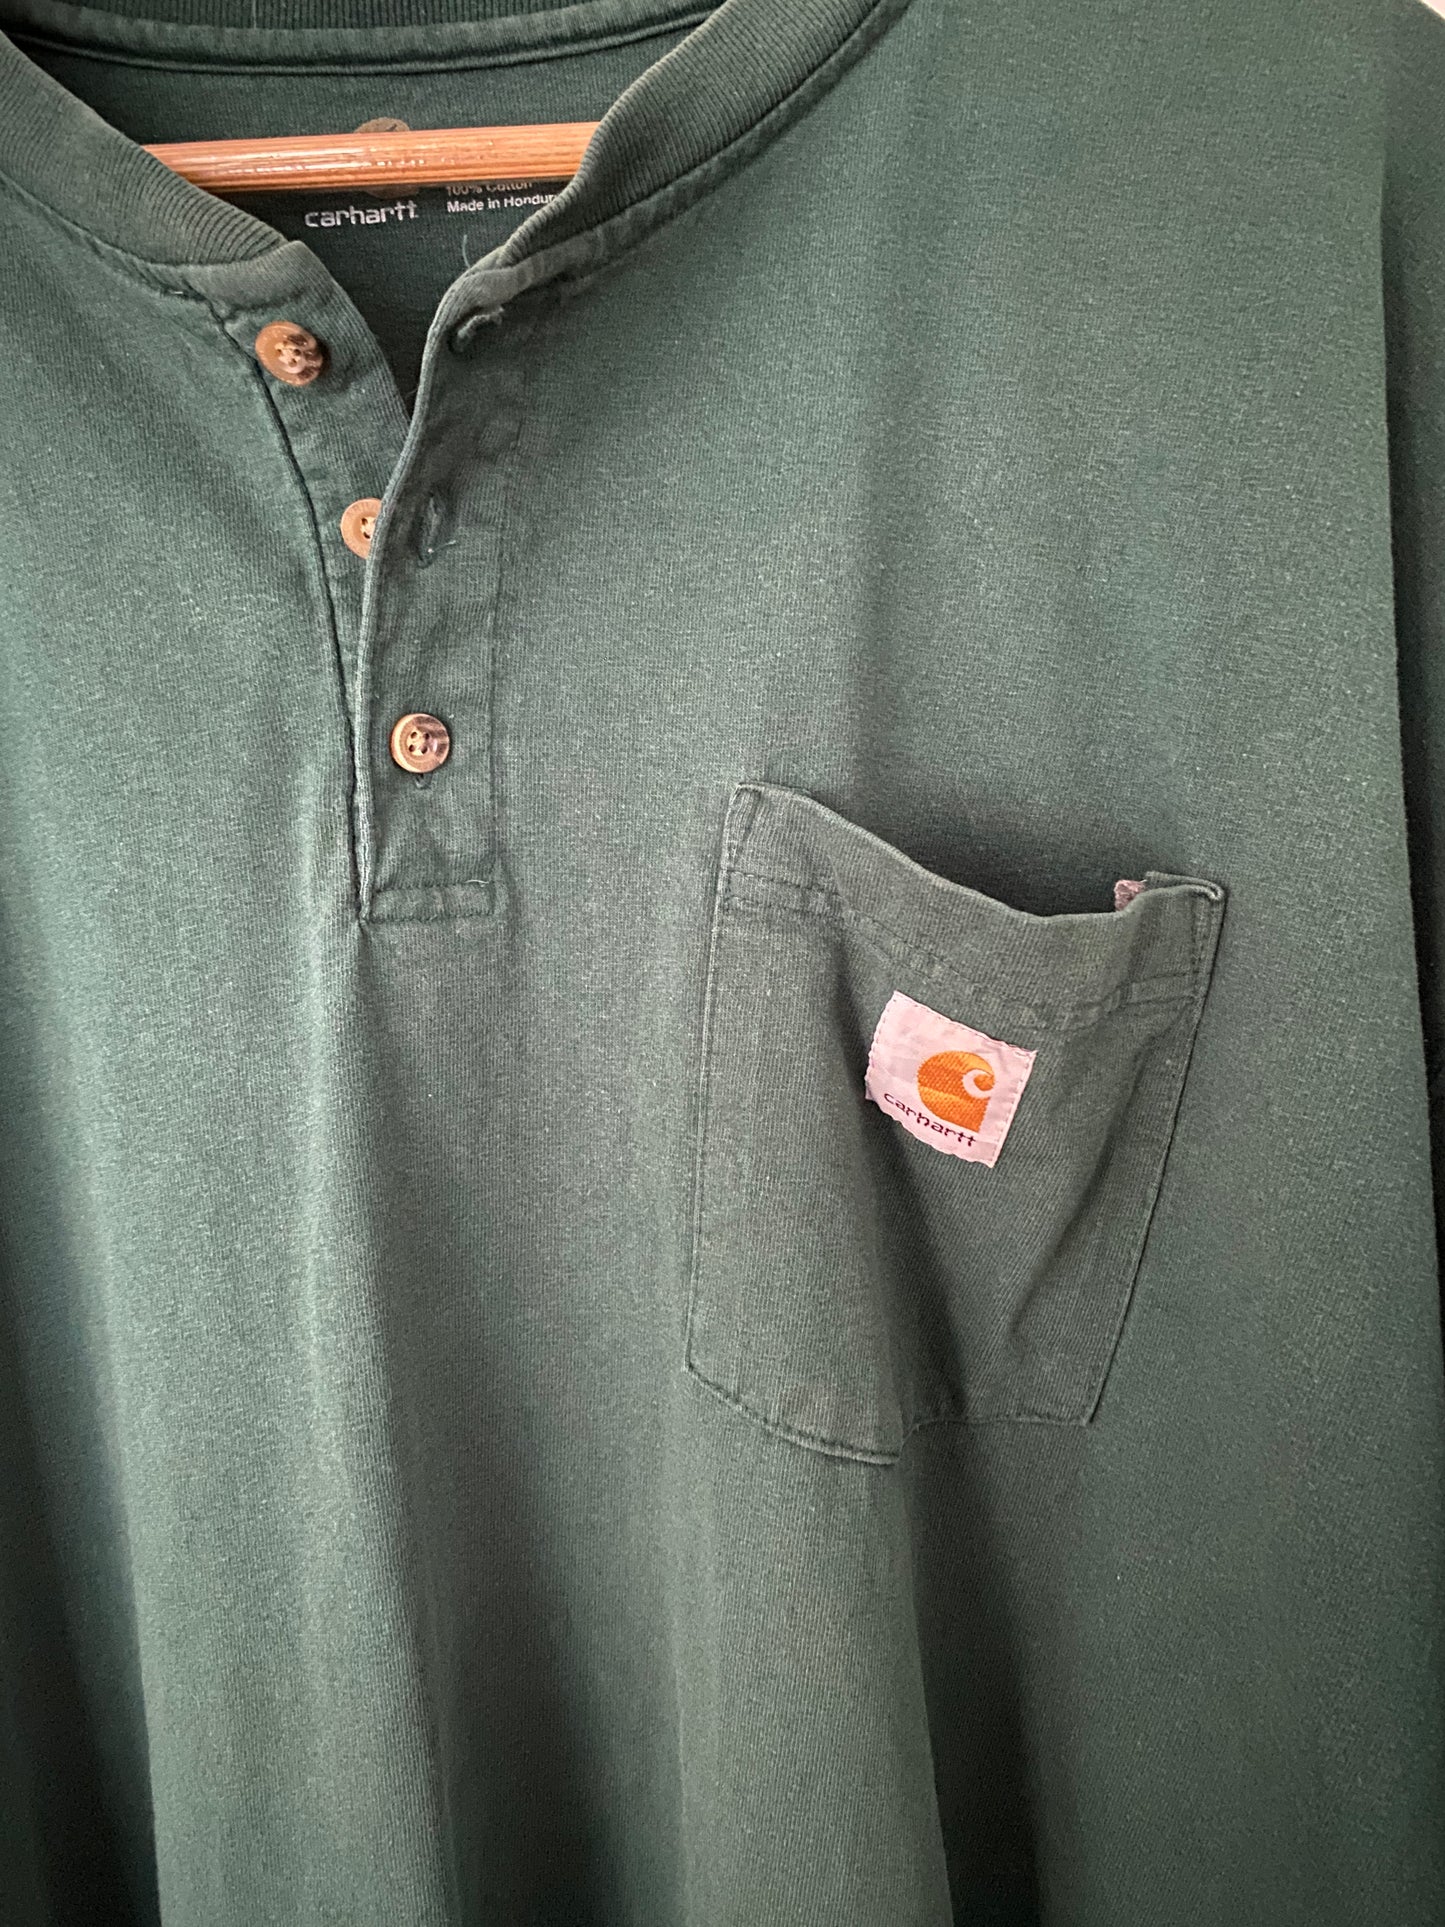 Carhartt Pocket Henley T-Shirt - 2XL Tall